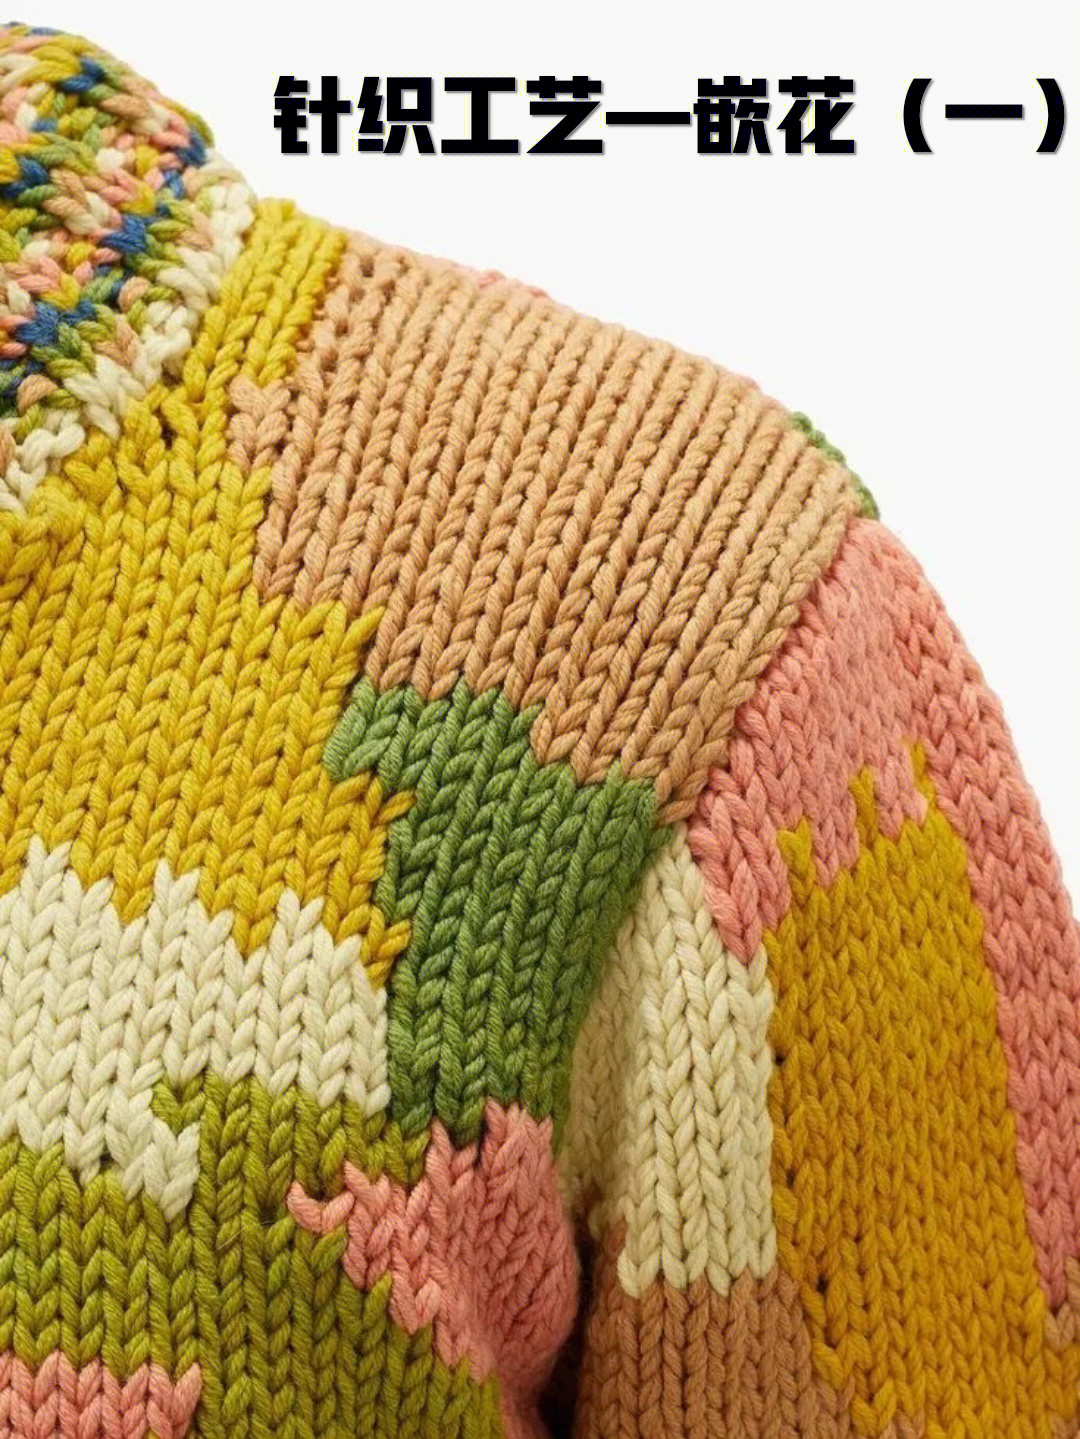 嵌花织物是把不同颜色编织的色块,沿纵行方向连接起来形成的一种色彩